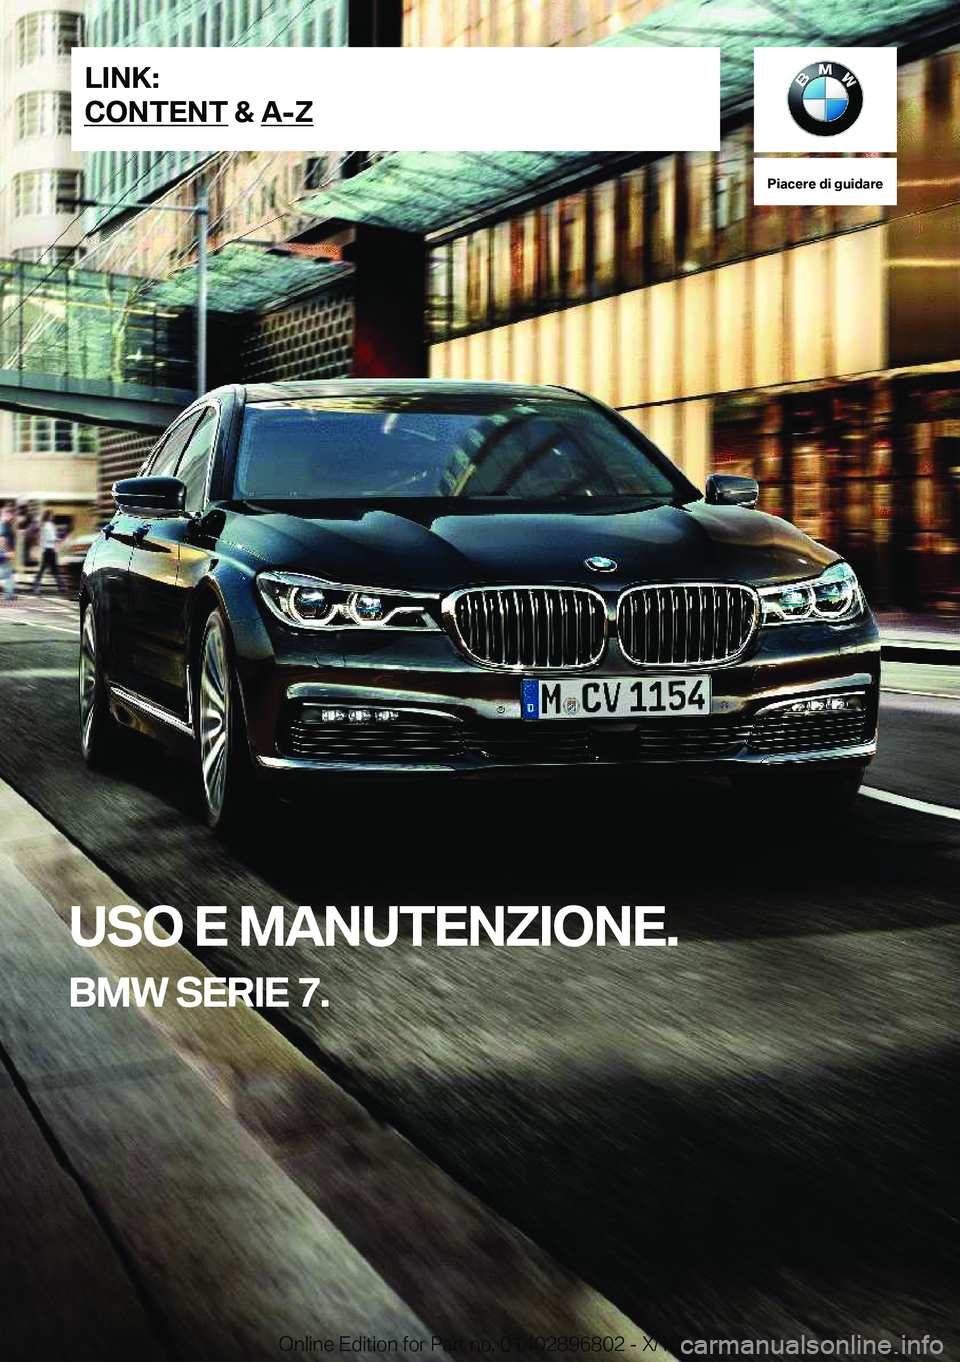 BMW 7 SERIES 2019  Libretti Di Uso E manutenzione (in Italian) �P�i�a�c�e�r�e��d�i��g�u�i�d�a�r�e
�U�S�O��E��M�A�N�U�T�E�N�Z�I�O�N�E�.
�B�M�W��S�E�R�I�E��7�.�L�I�N�K�:
�C�O�N�T�E�N�T��&��A�-�Z�O�n�l�i�n�e��E�d�i�t�i�o�n��f�o�r��P�a�r�t��n�o�.��0�1�4�